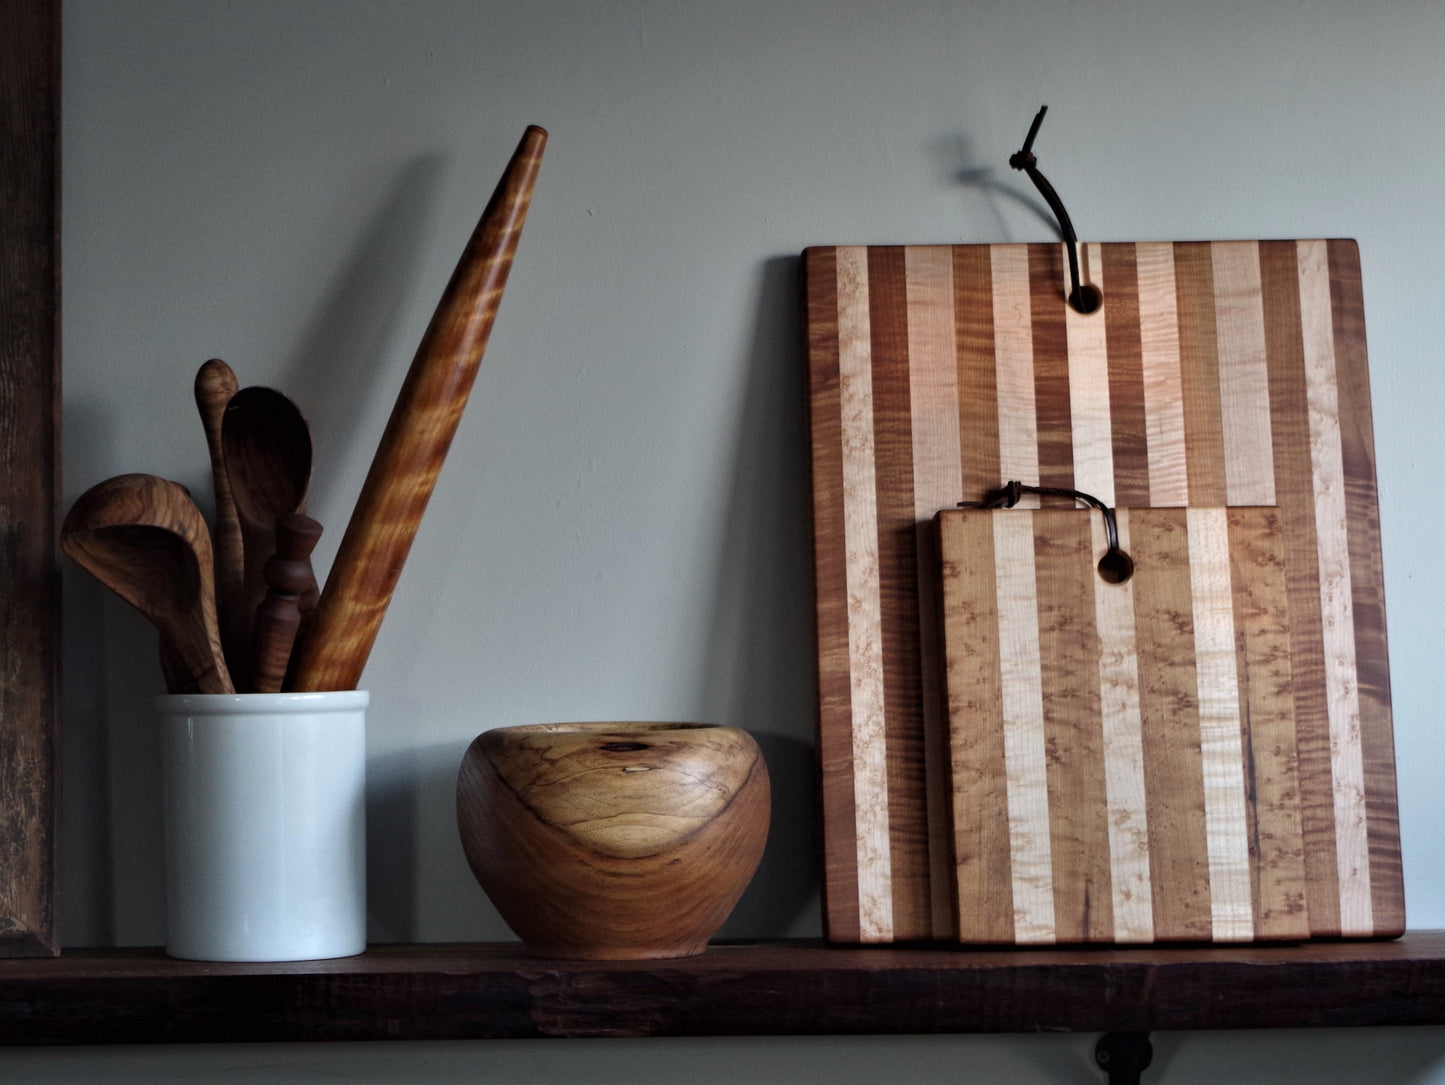 Kitchen Boards - Cattails Woodwork